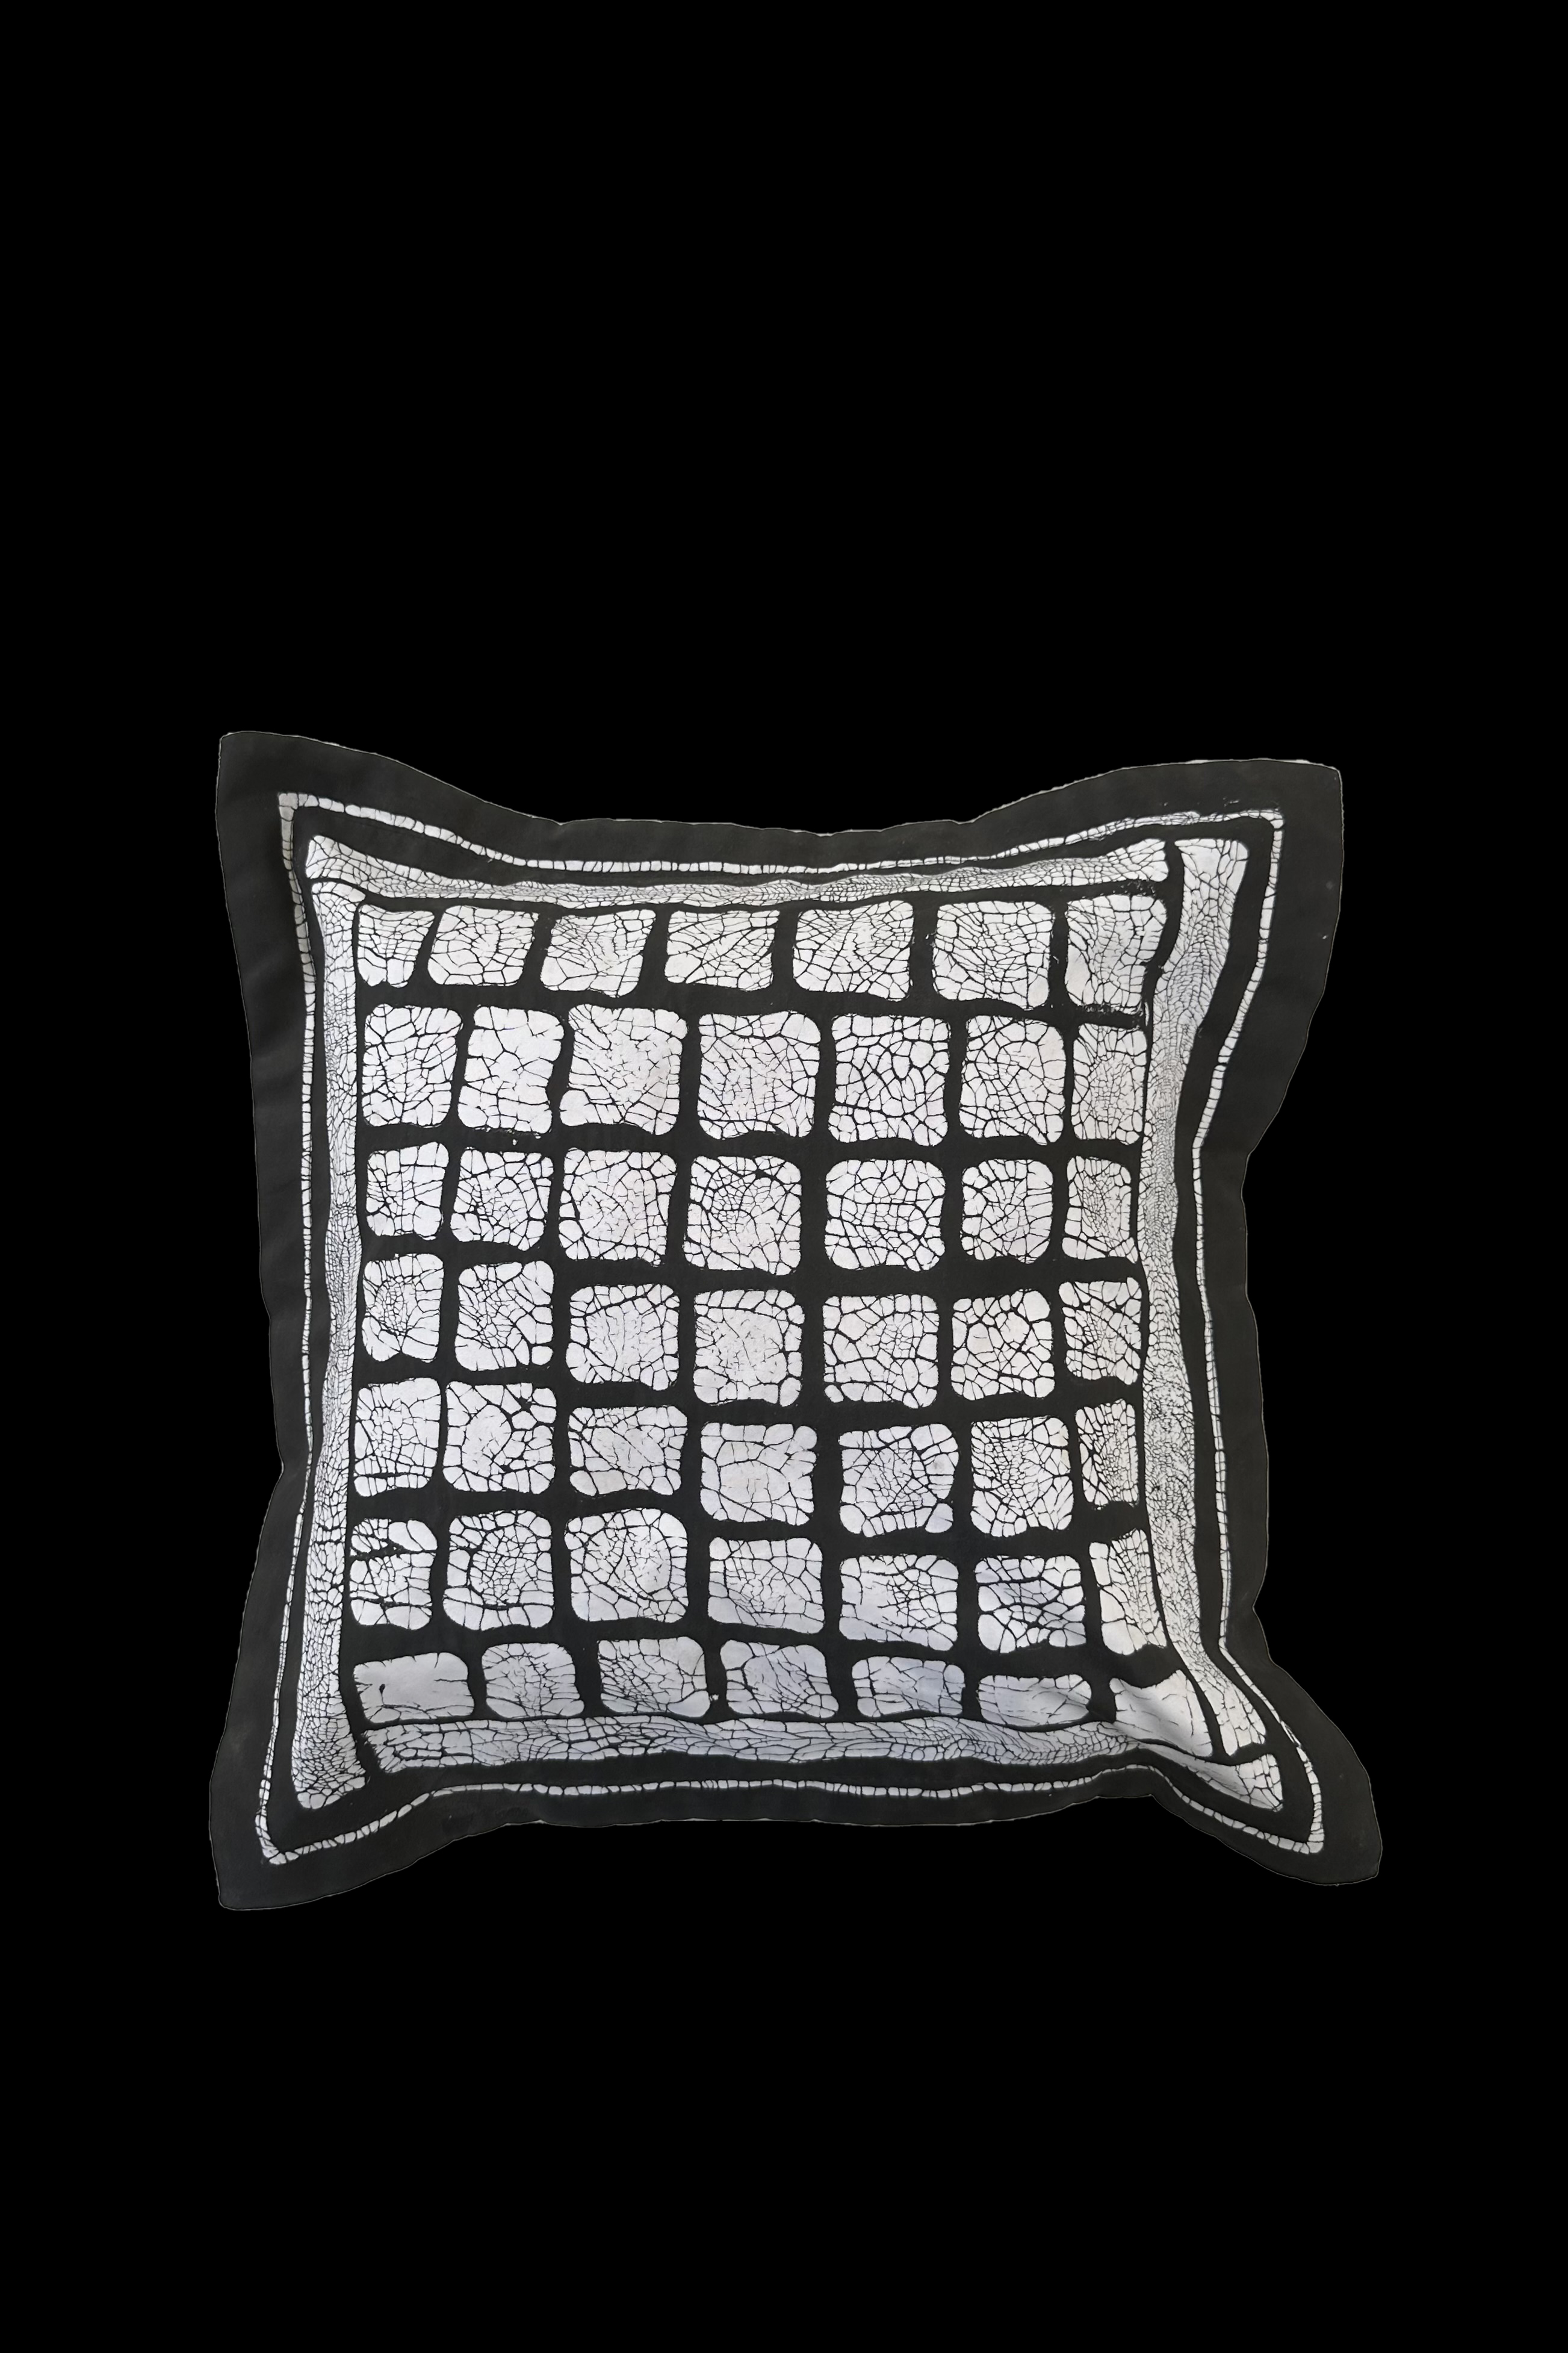 Hand Made Black and White Sadza Pillow - Zimbabwe